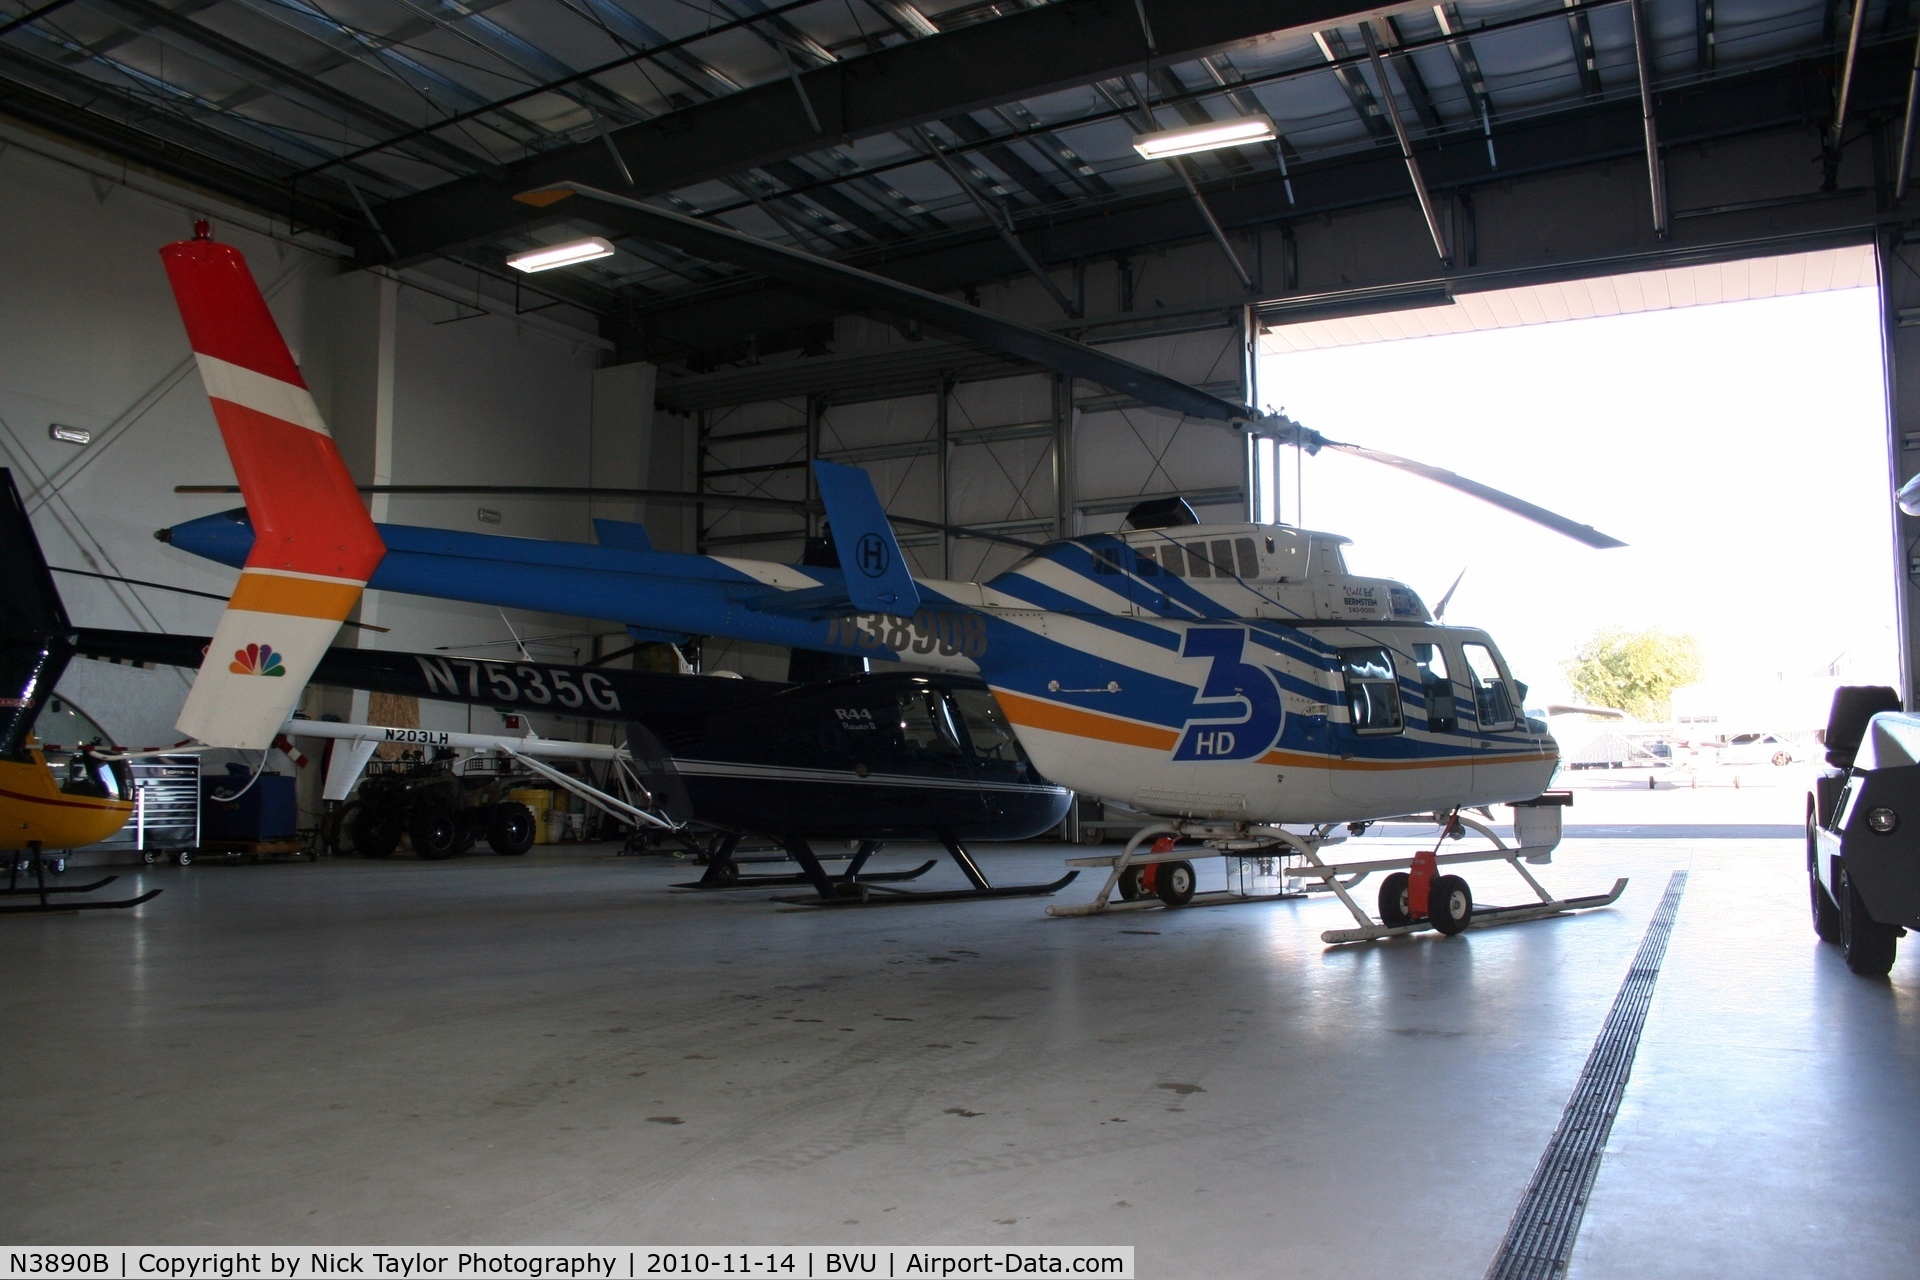 N3890B, 1980 Bell 206L-1 LongRanger II C/N 45480, Sitting in the hangar with N7535G, N203LH, and N6703S